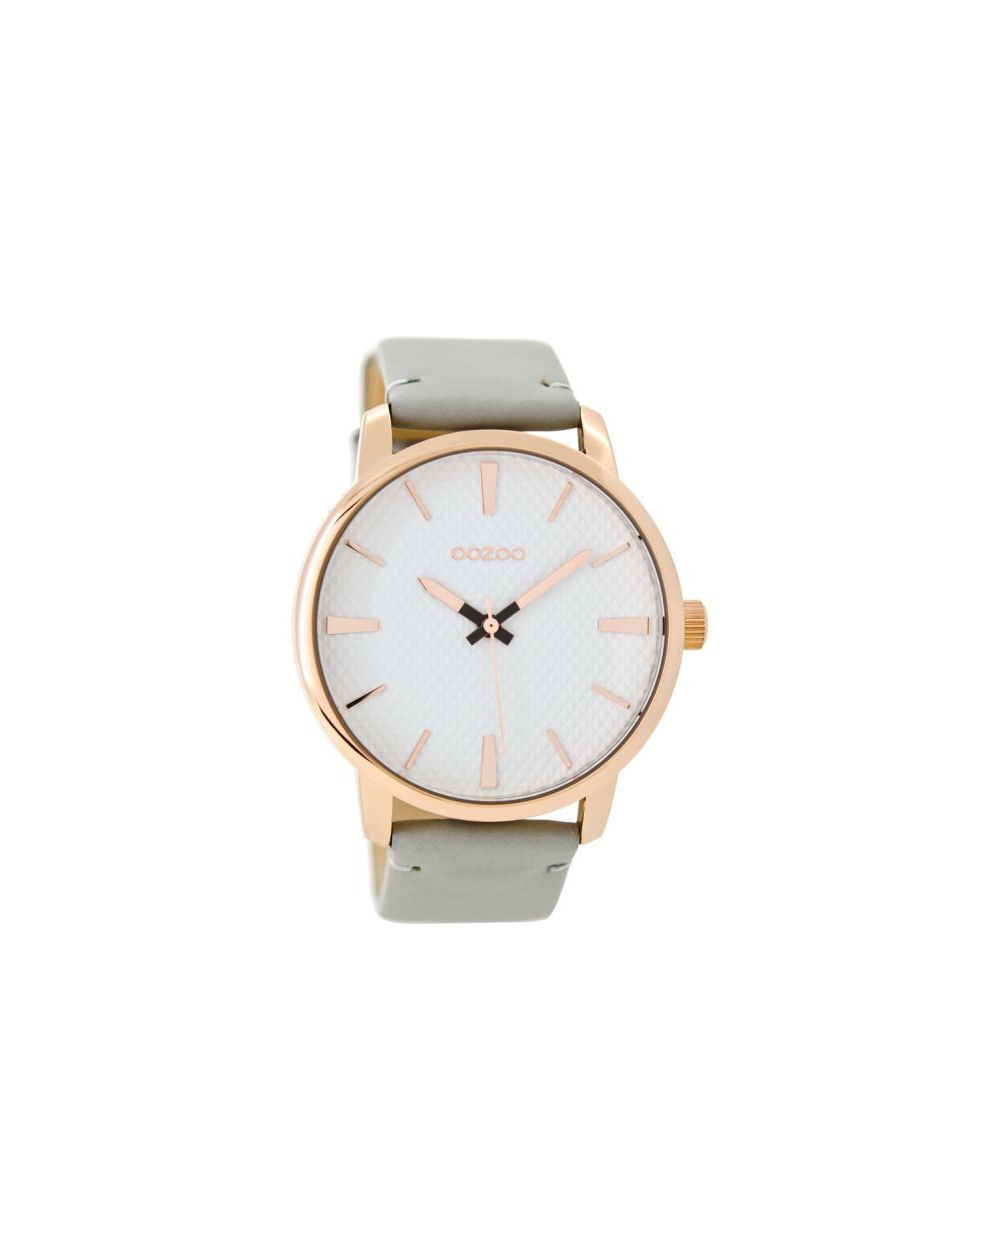 Oozoo montre/watch/horloge C9020